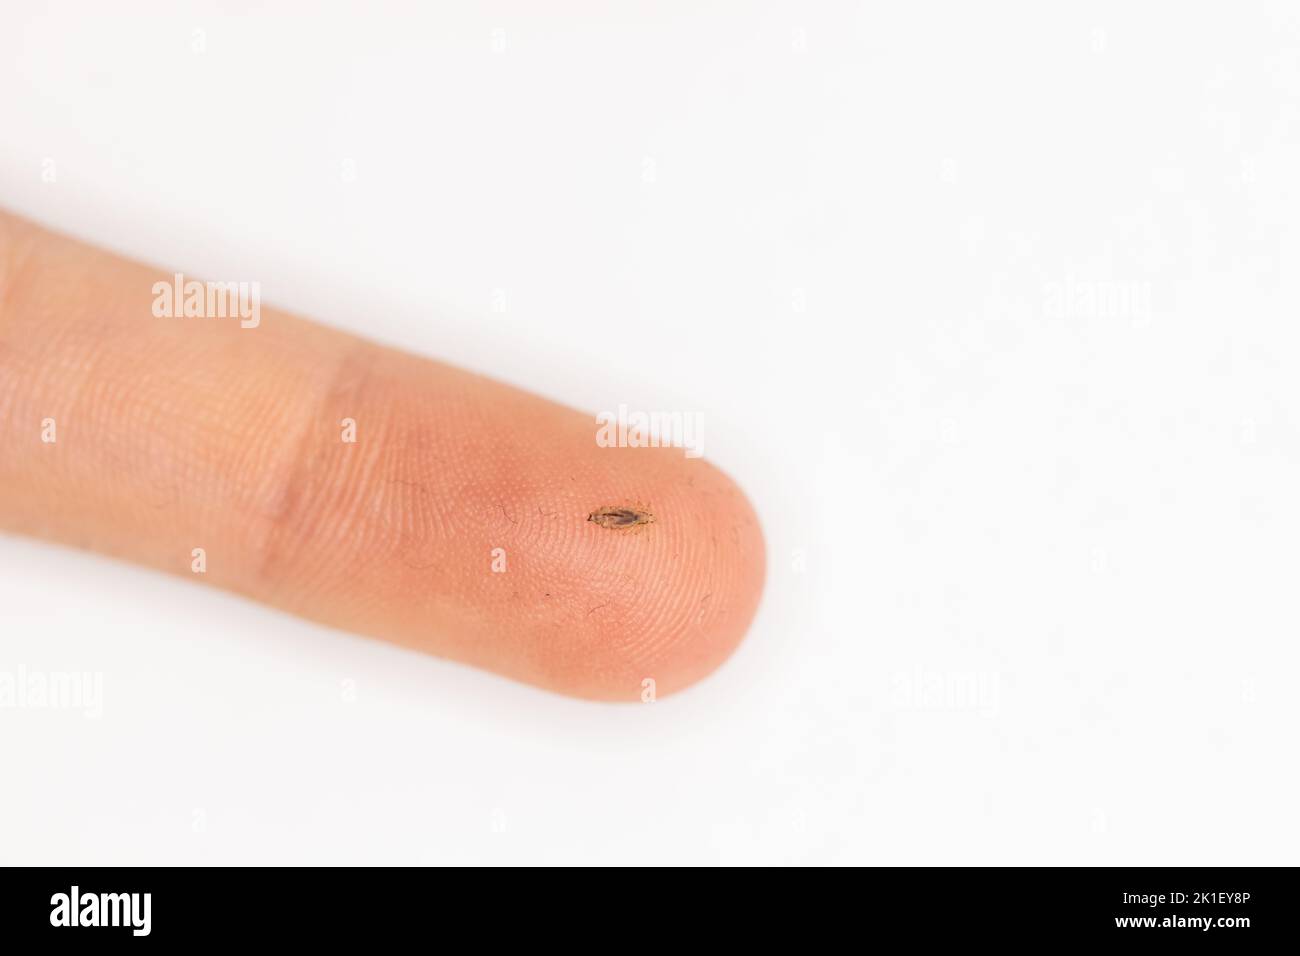 Une souris humaine sur un doigt lorsque des poux ont été découverts dans les cheveux d'un enfant Banque D'Images